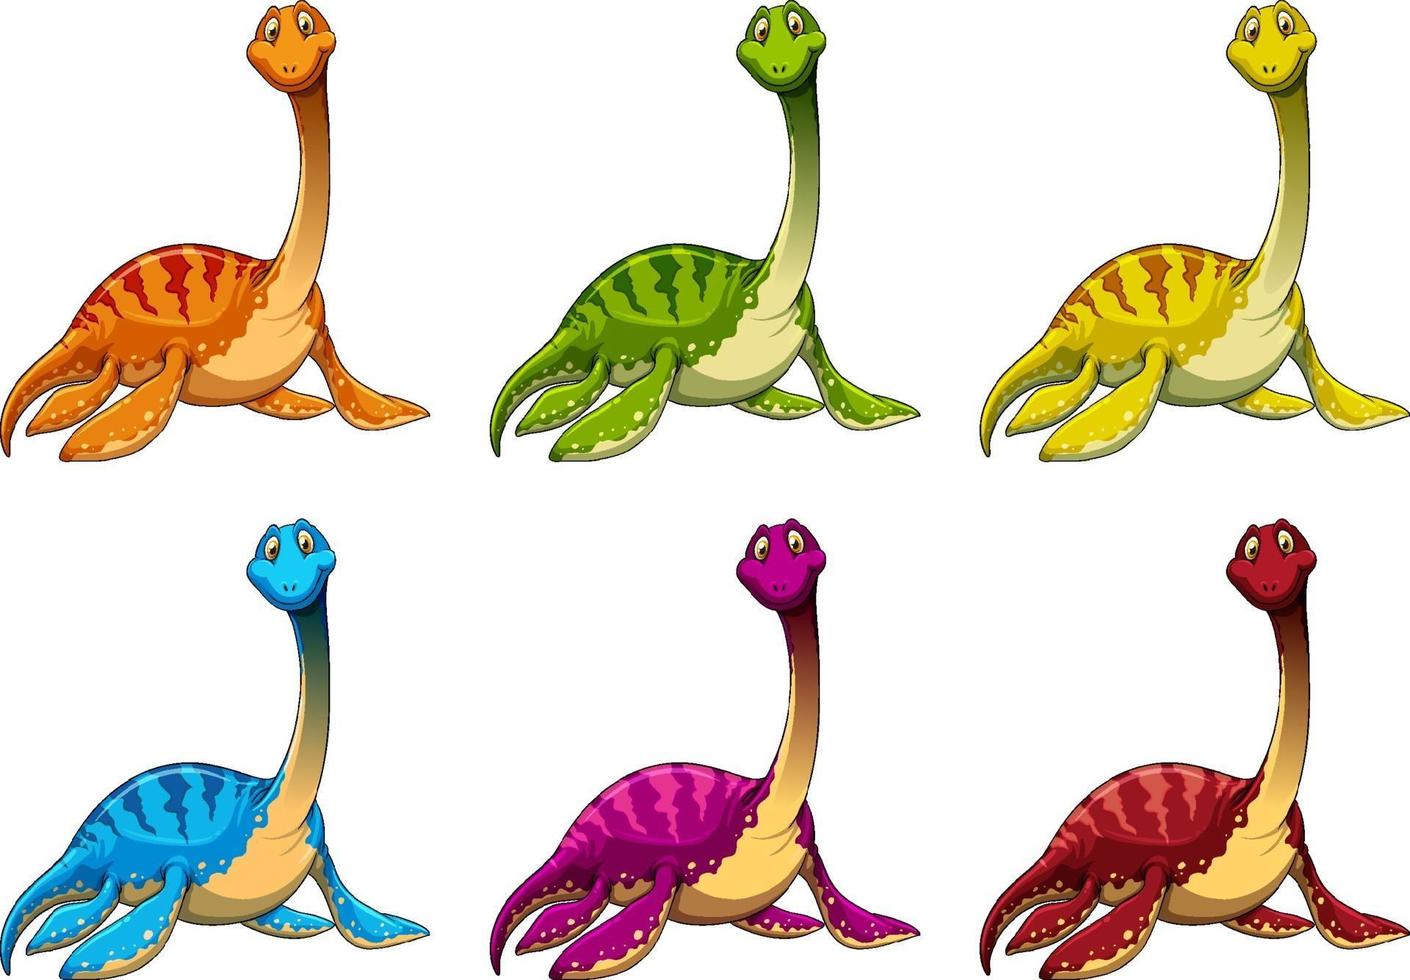 définir le personnage de dessin animé de dinosaure pliosaurus vecteur